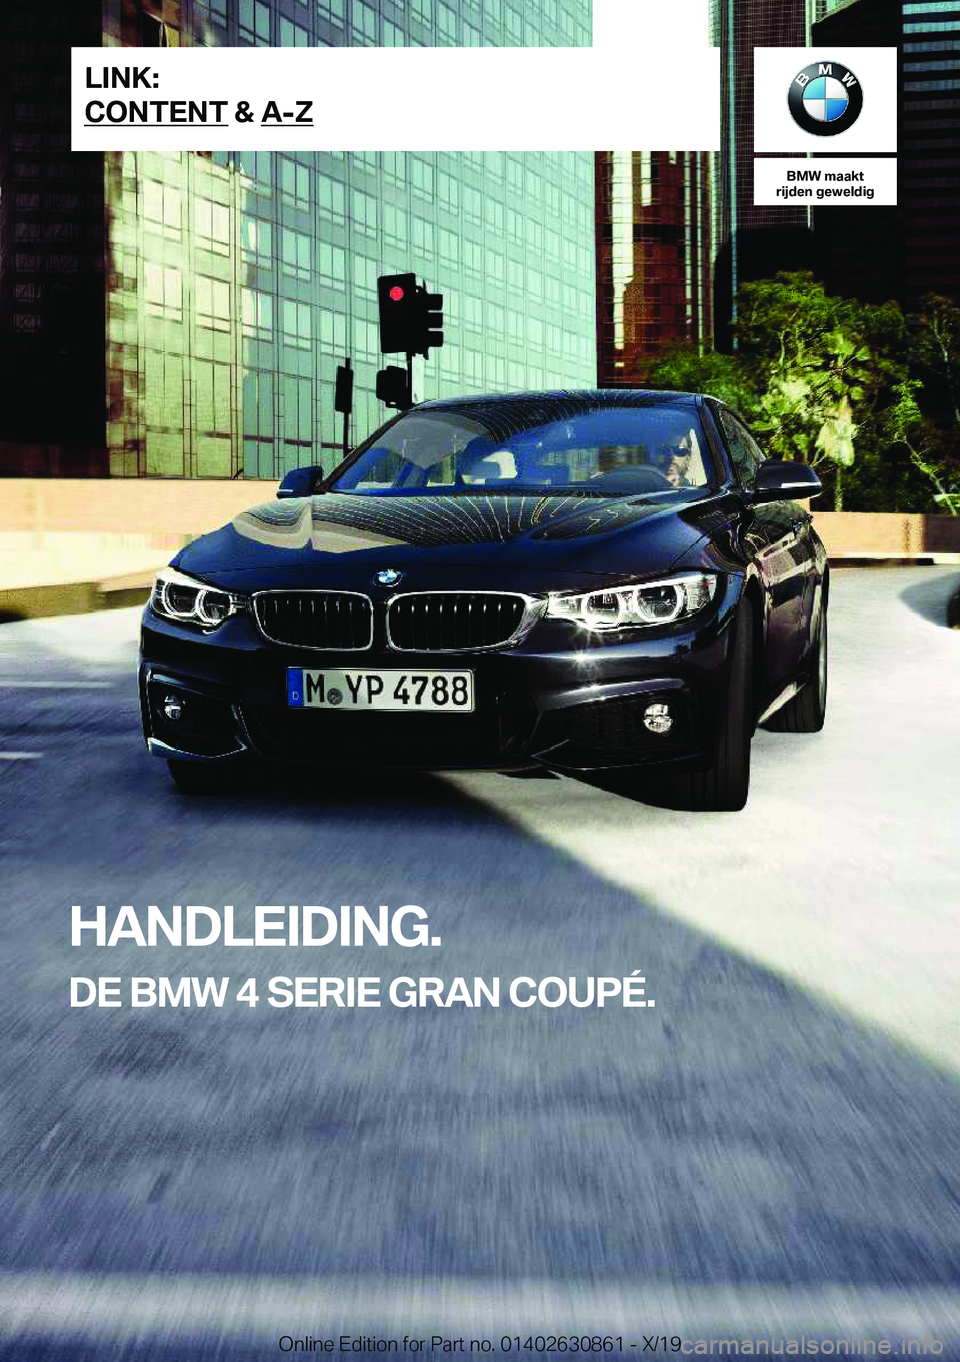 BMW 4 SERIES GRAN COUPE 2020  Instructieboekjes (in Dutch) �B�M�W��m�a�a�k�t
�r�i�j�d�e�n��g�e�w�e�l�d�i�g
�H�A�N�D�L�E�I�D�I�N�G�.
�D�E��B�M�W��4��S�E�R�I�E��G�R�A�N��C�O�U�P�